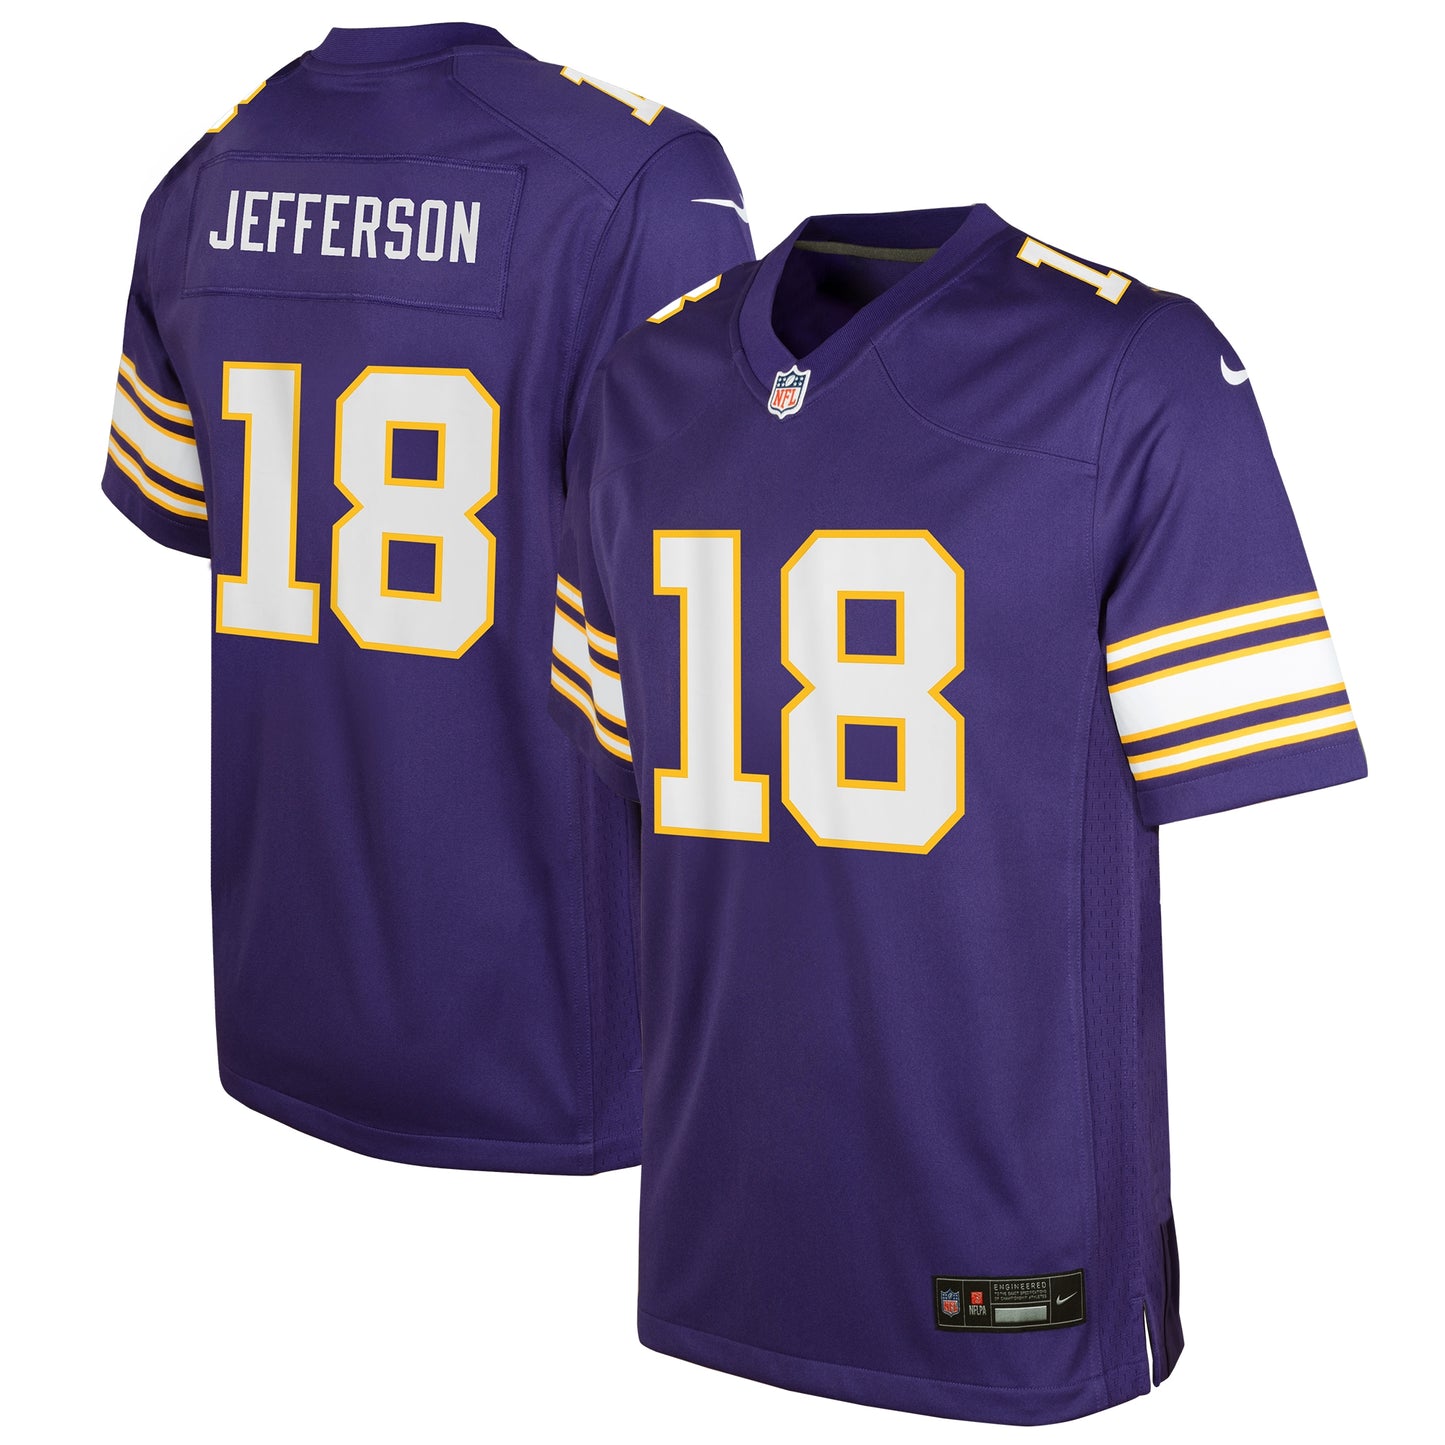 Justin Jefferson Minnesota Vikings Nike Youth Game Jersey - Purple